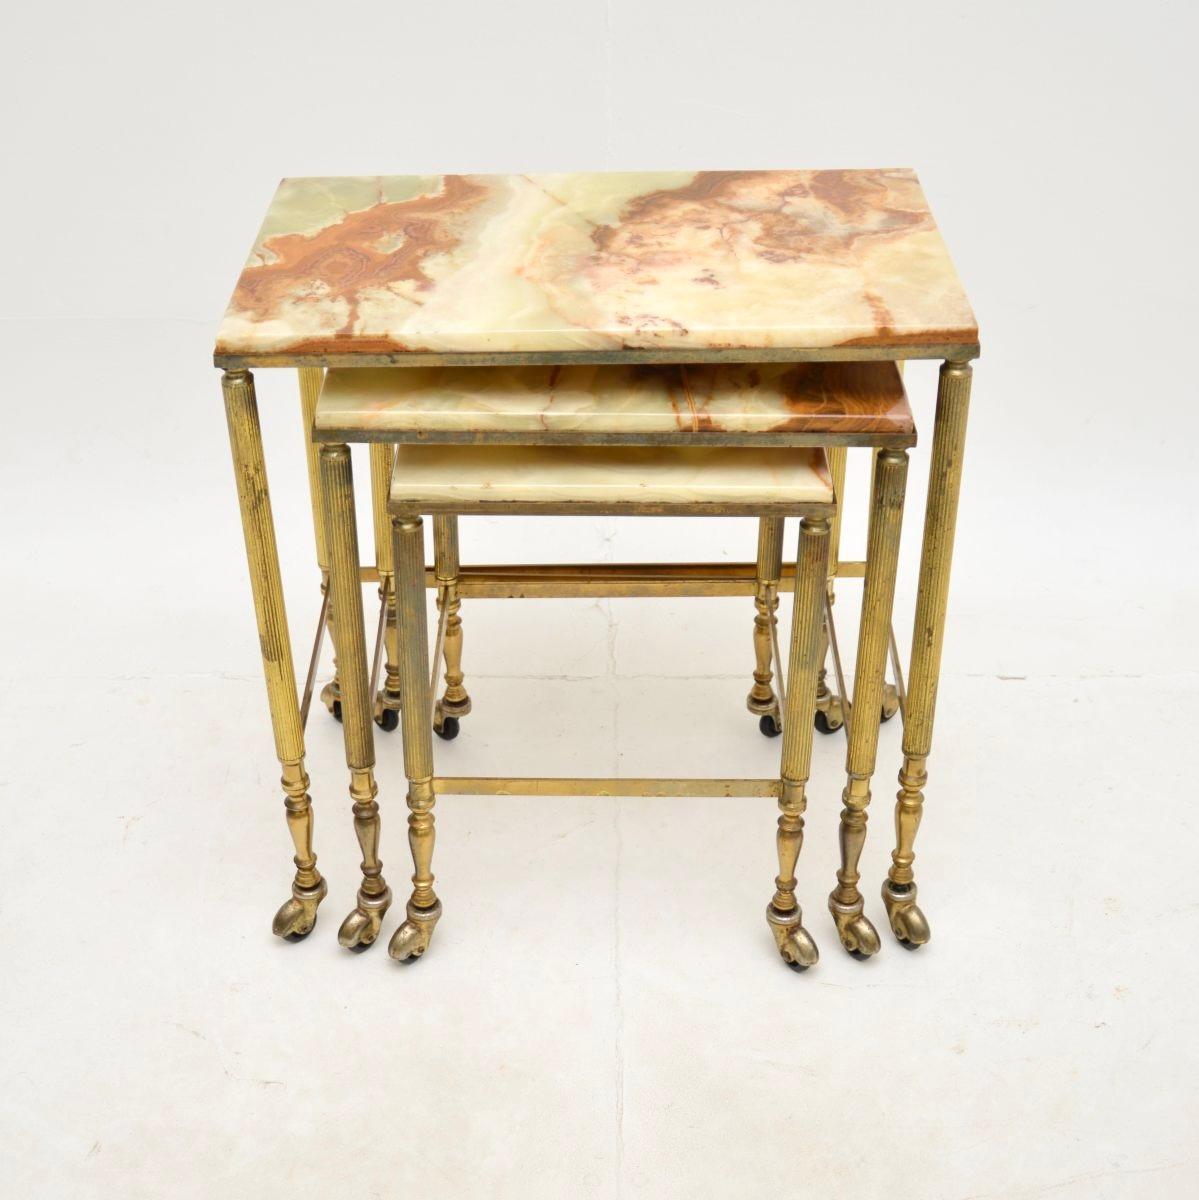 Ein schönes antikes französisches Tischnest aus Messing und Onyx, etwa aus den 1930er Jahren.

Sie sind von hervorragender Qualität, die massiven Messingrahmen haben kannelierte Beine, gestreckte Sockel und stehen auf Messingrollen. Die Einsätze aus